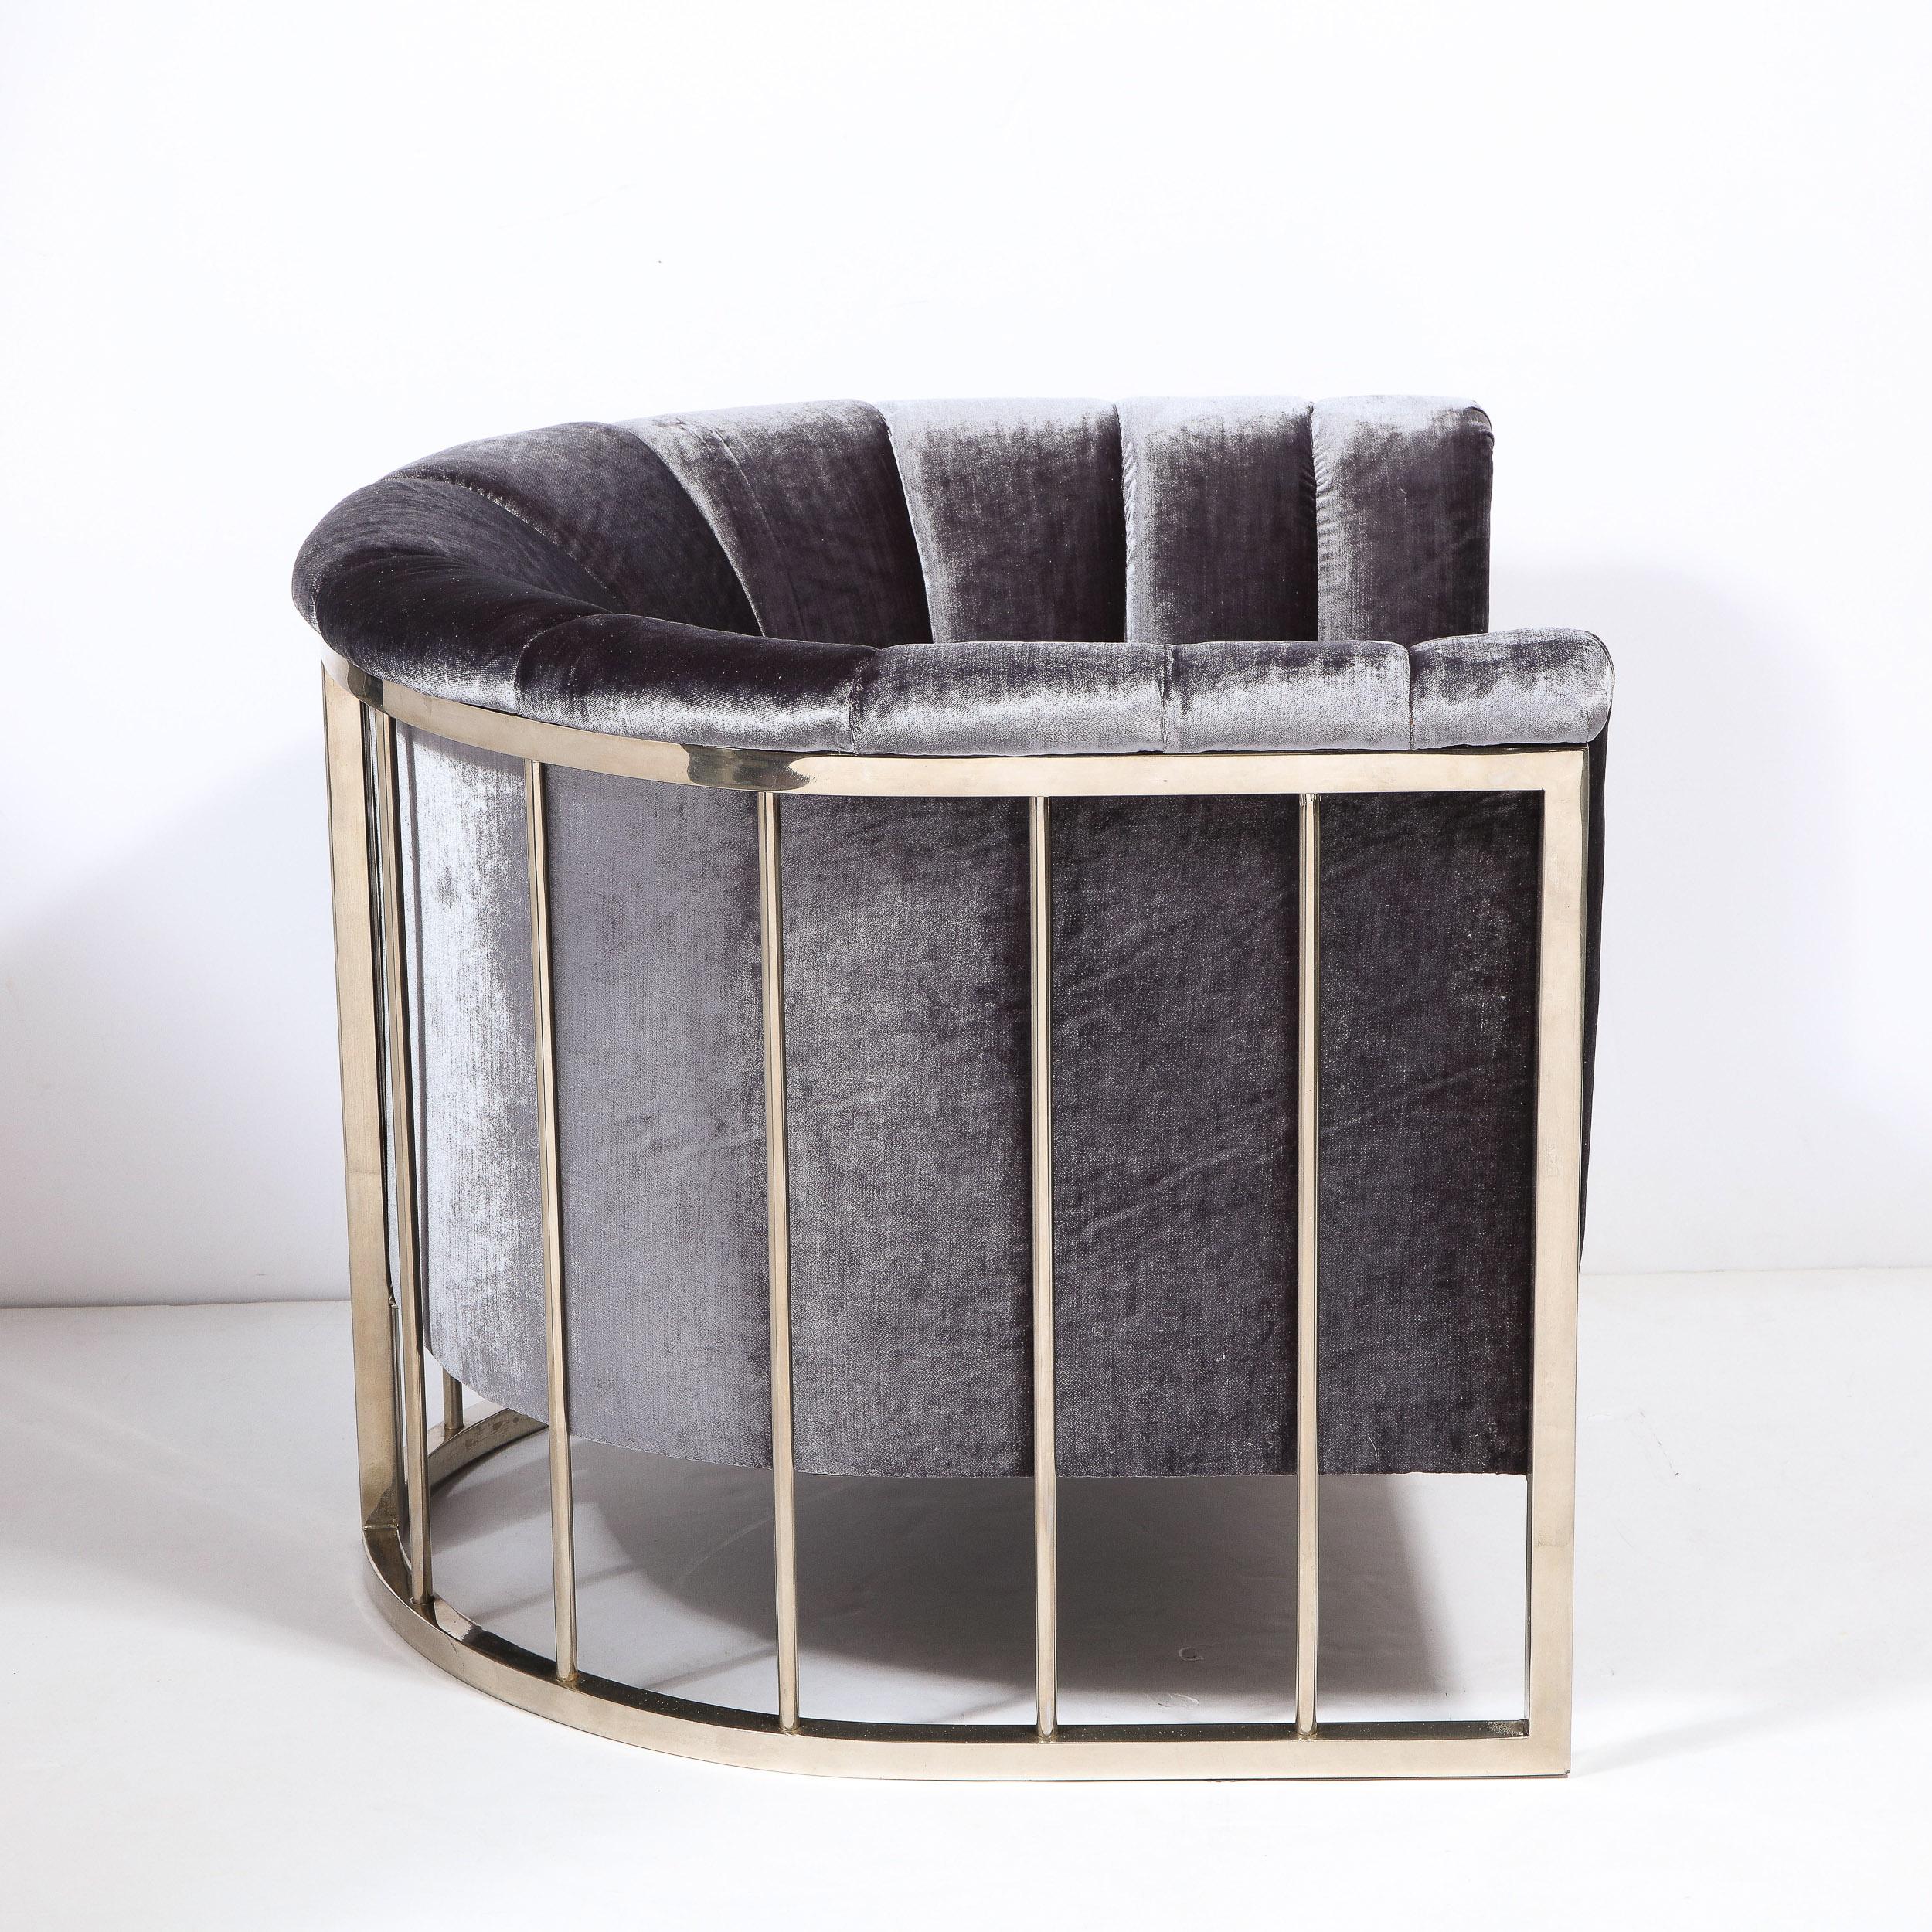 Dieser atemberaubende und skulpturale Lounge-/Sesselsessel wurde in den Vereinigten Staaten um 1970 von dem angesehenen amerikanischen Designer Milo Baughman entworfen. Die Rückenlehne besteht aus einem gebogenen und geschweißten, rechteckigen,